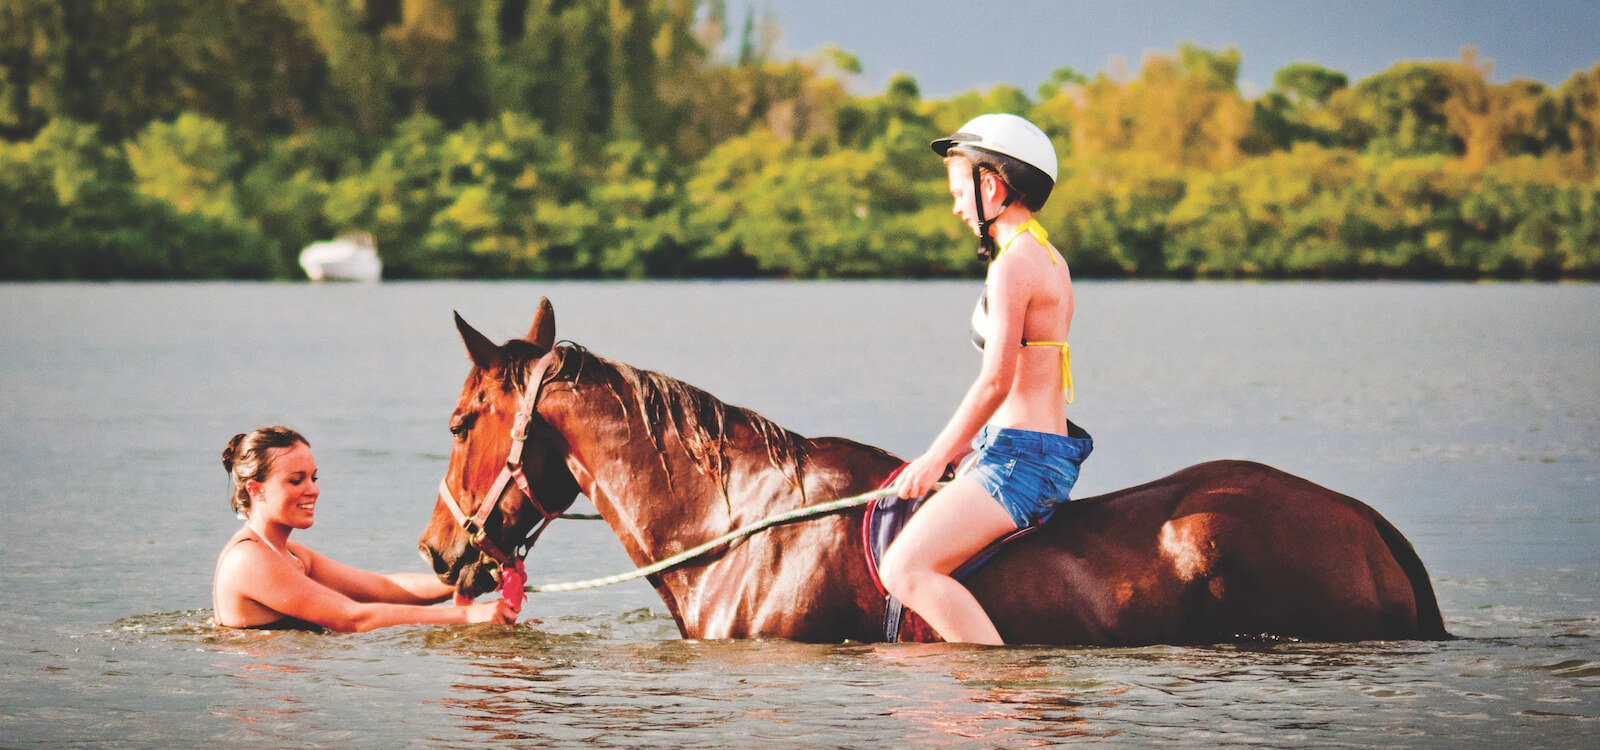 MustDo.com | Fun and exciting horseback riding along the beach at Palma Sola Bay, Bradenton, Florida, USA.